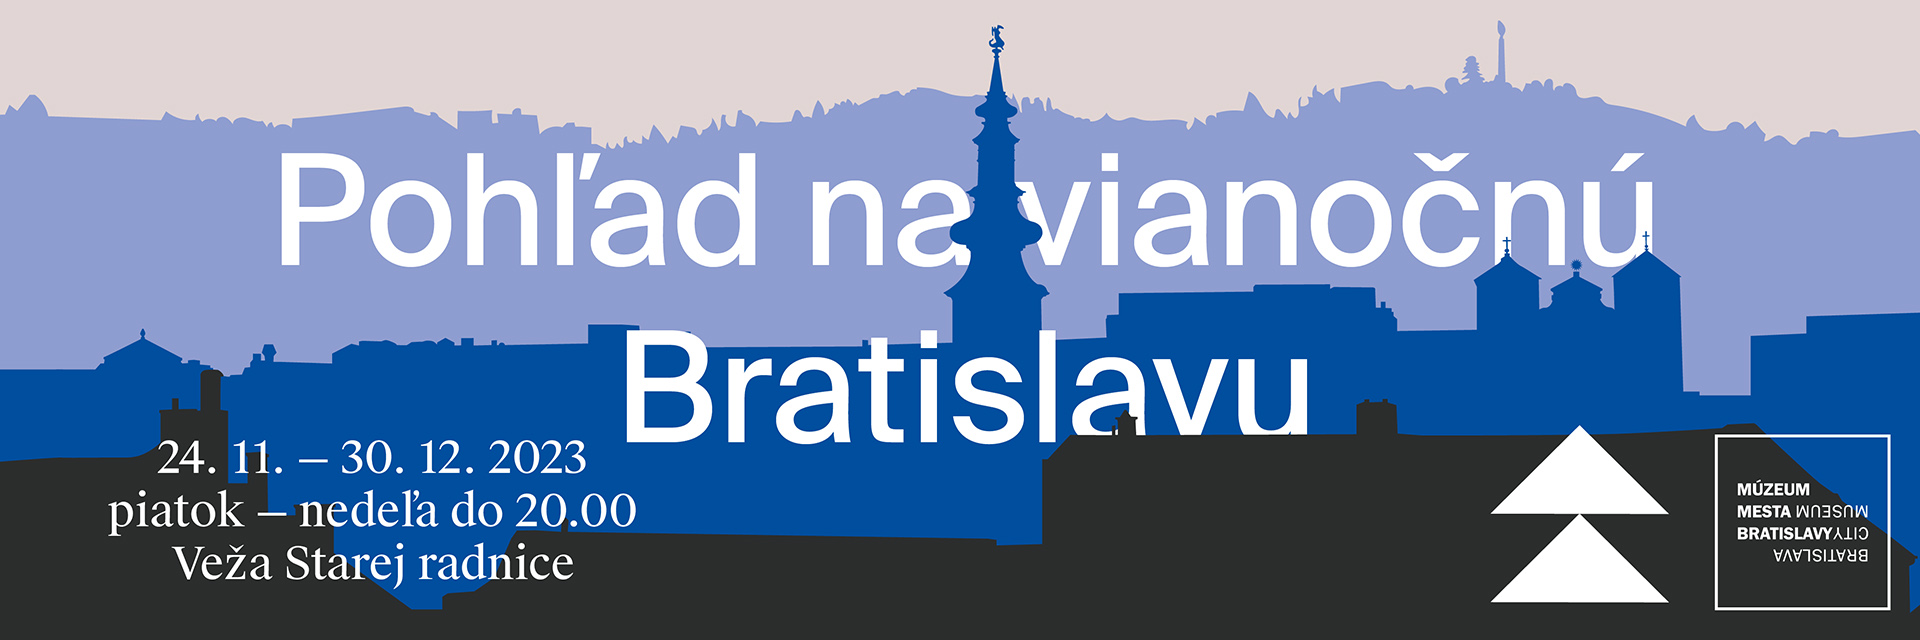 Pohľad na vianočnú Bratislavu